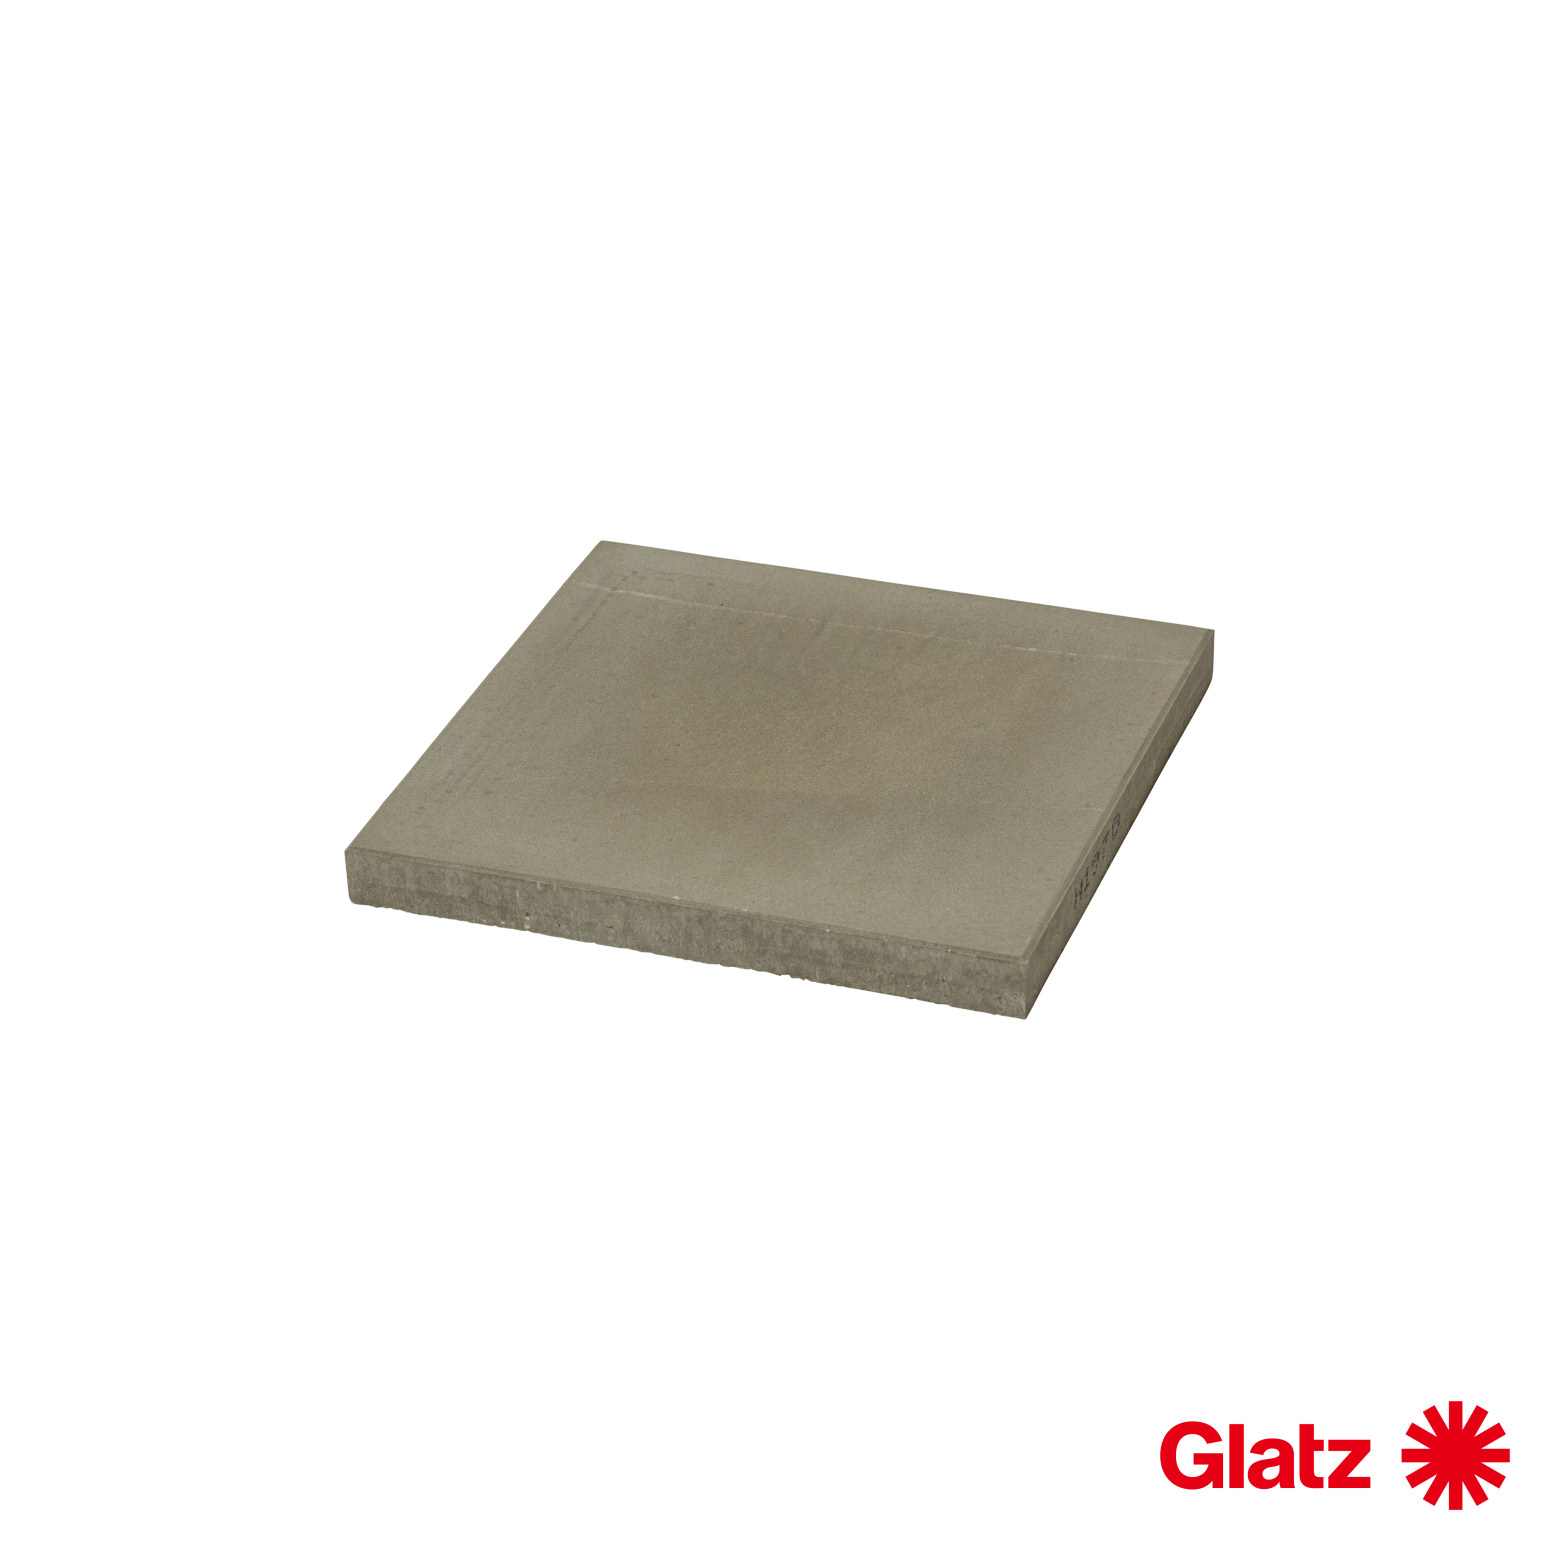 Glatz Platten-Set, 12 Stück, 40x40x4 cm, (ca. 165 kg), Beton